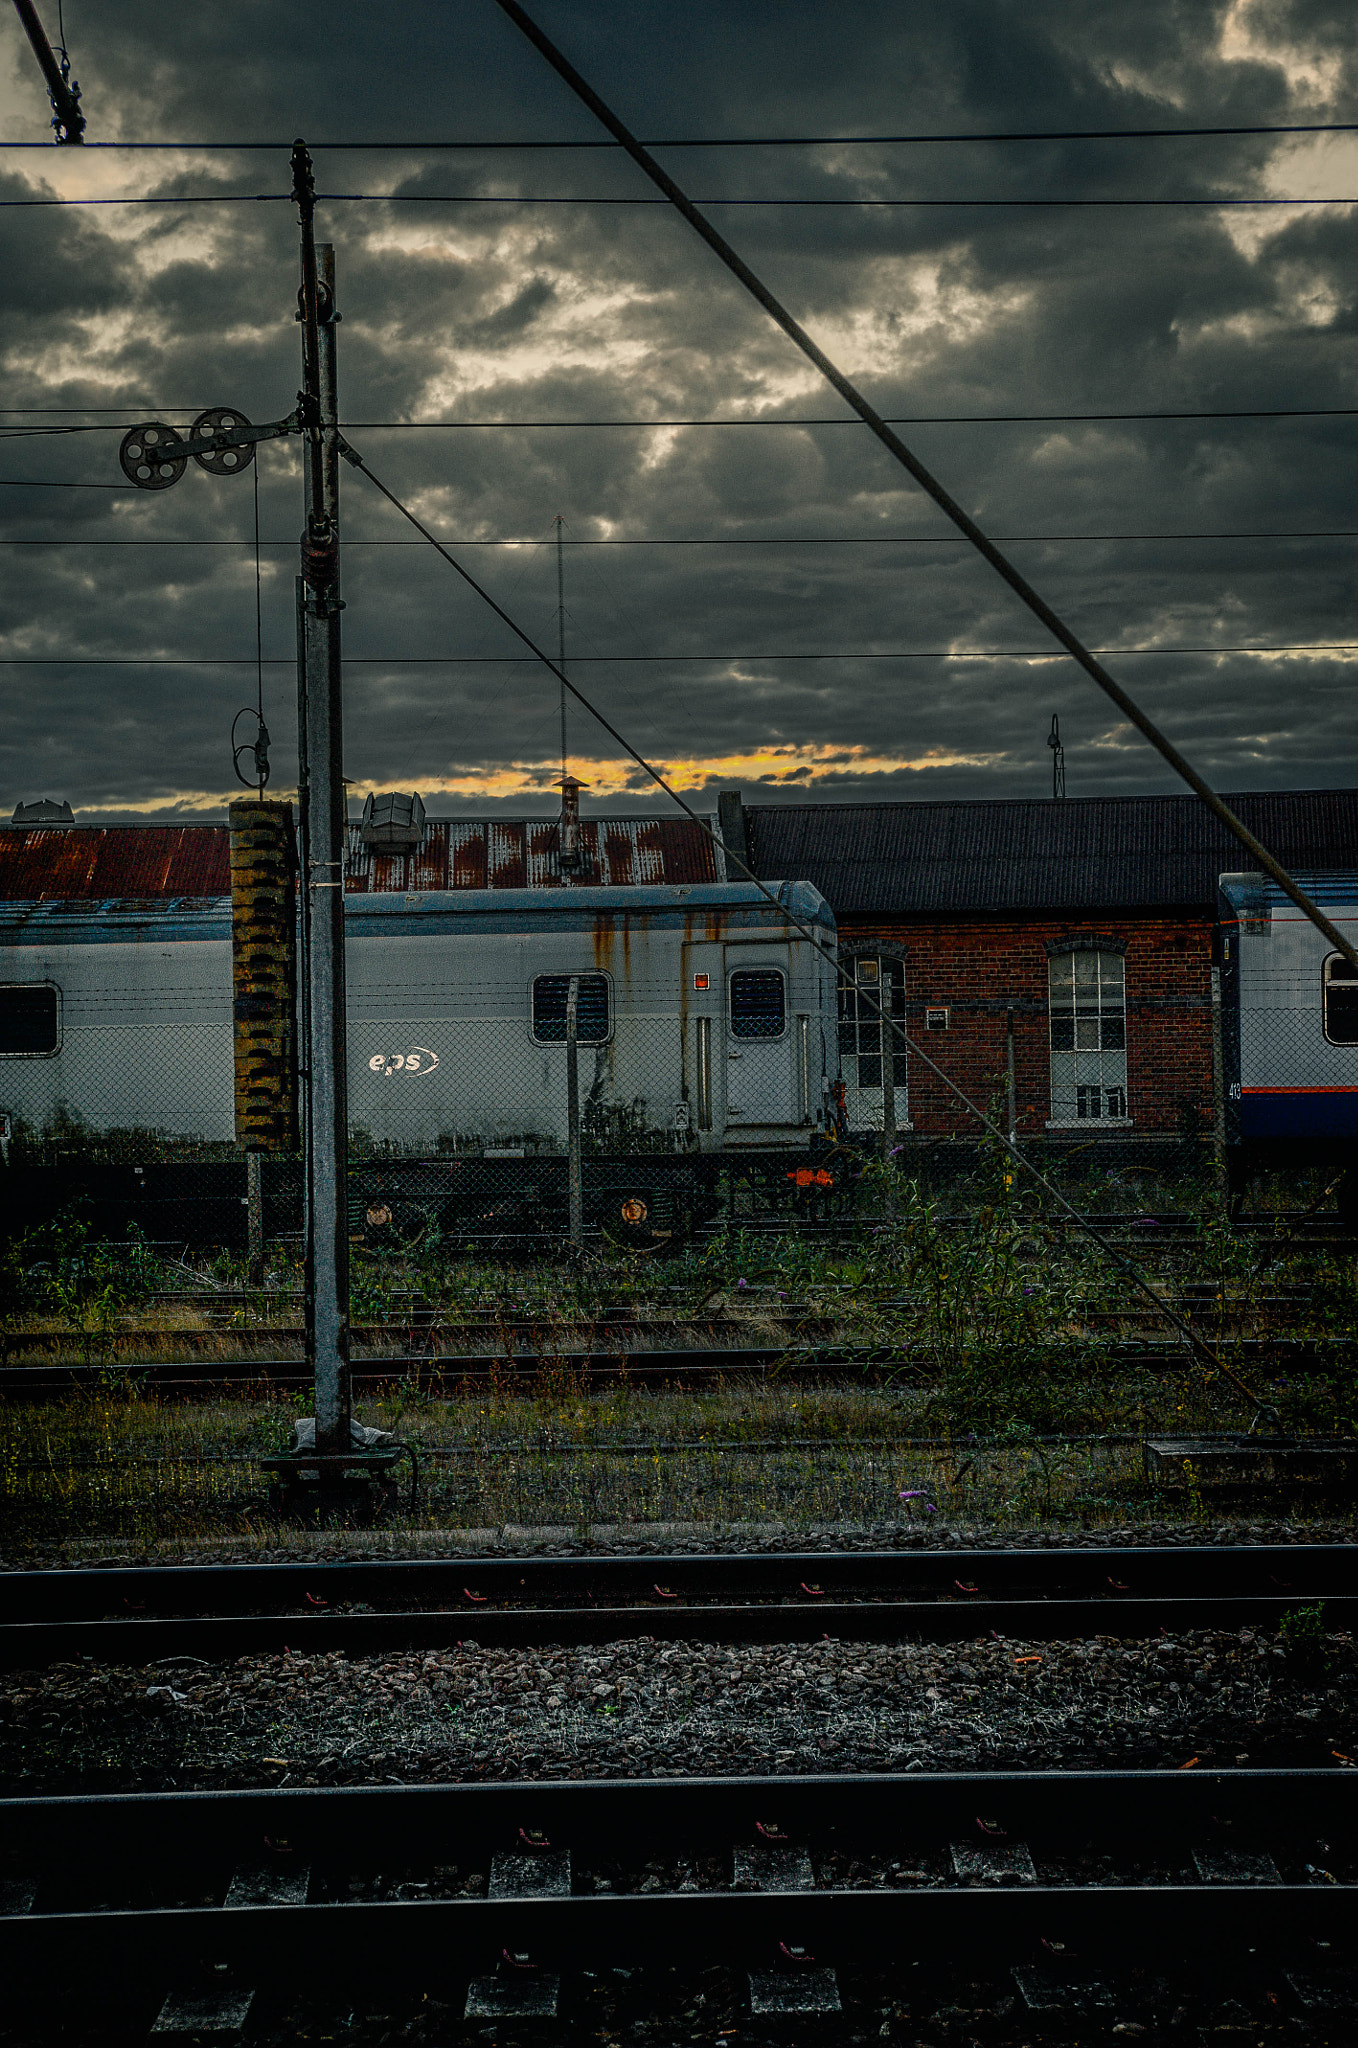 Nikon D700 + AF Zoom-Nikkor 35-70mm f/2.8D sample photo. Doncaster train station photography